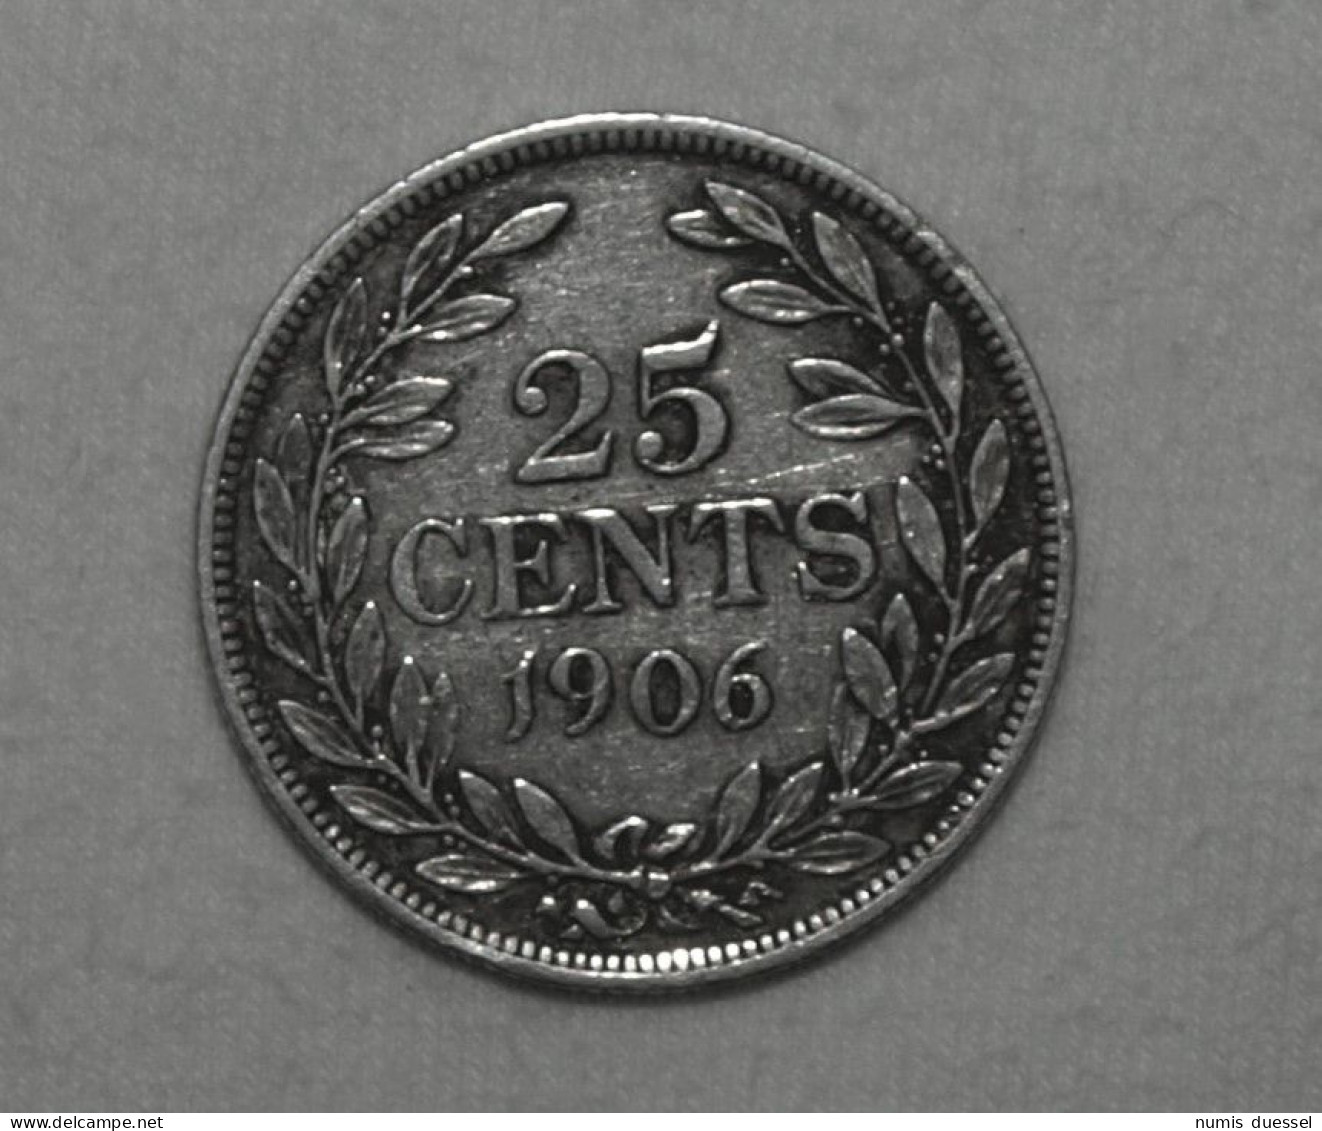 Silber/Silver Liberia Liberty Head, 1906 H, 25 Cents - Liberia